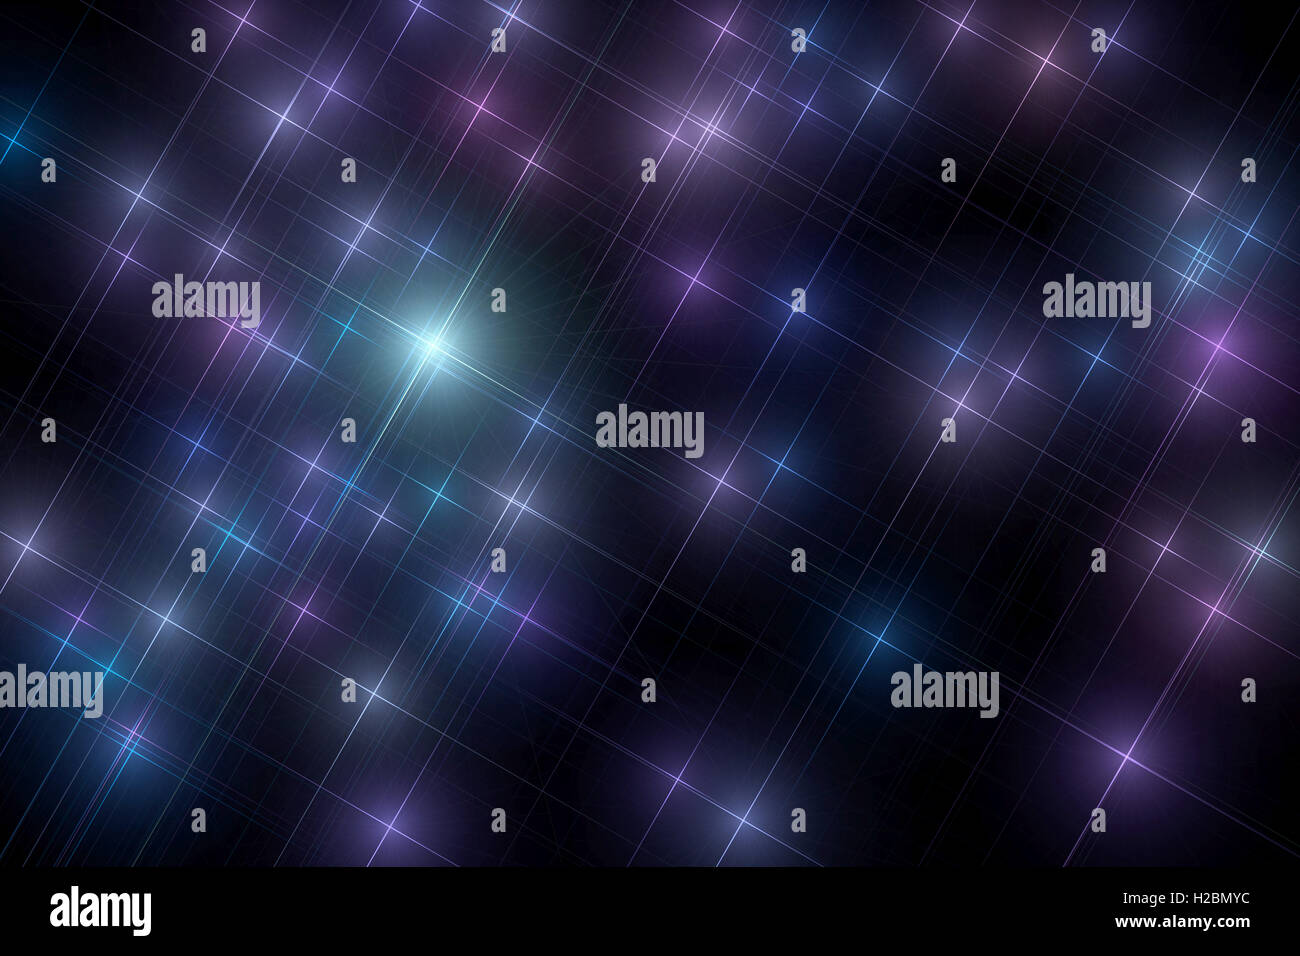 Résumé fond étoilé sombre composé d'étoiles multicolores. Banque D'Images